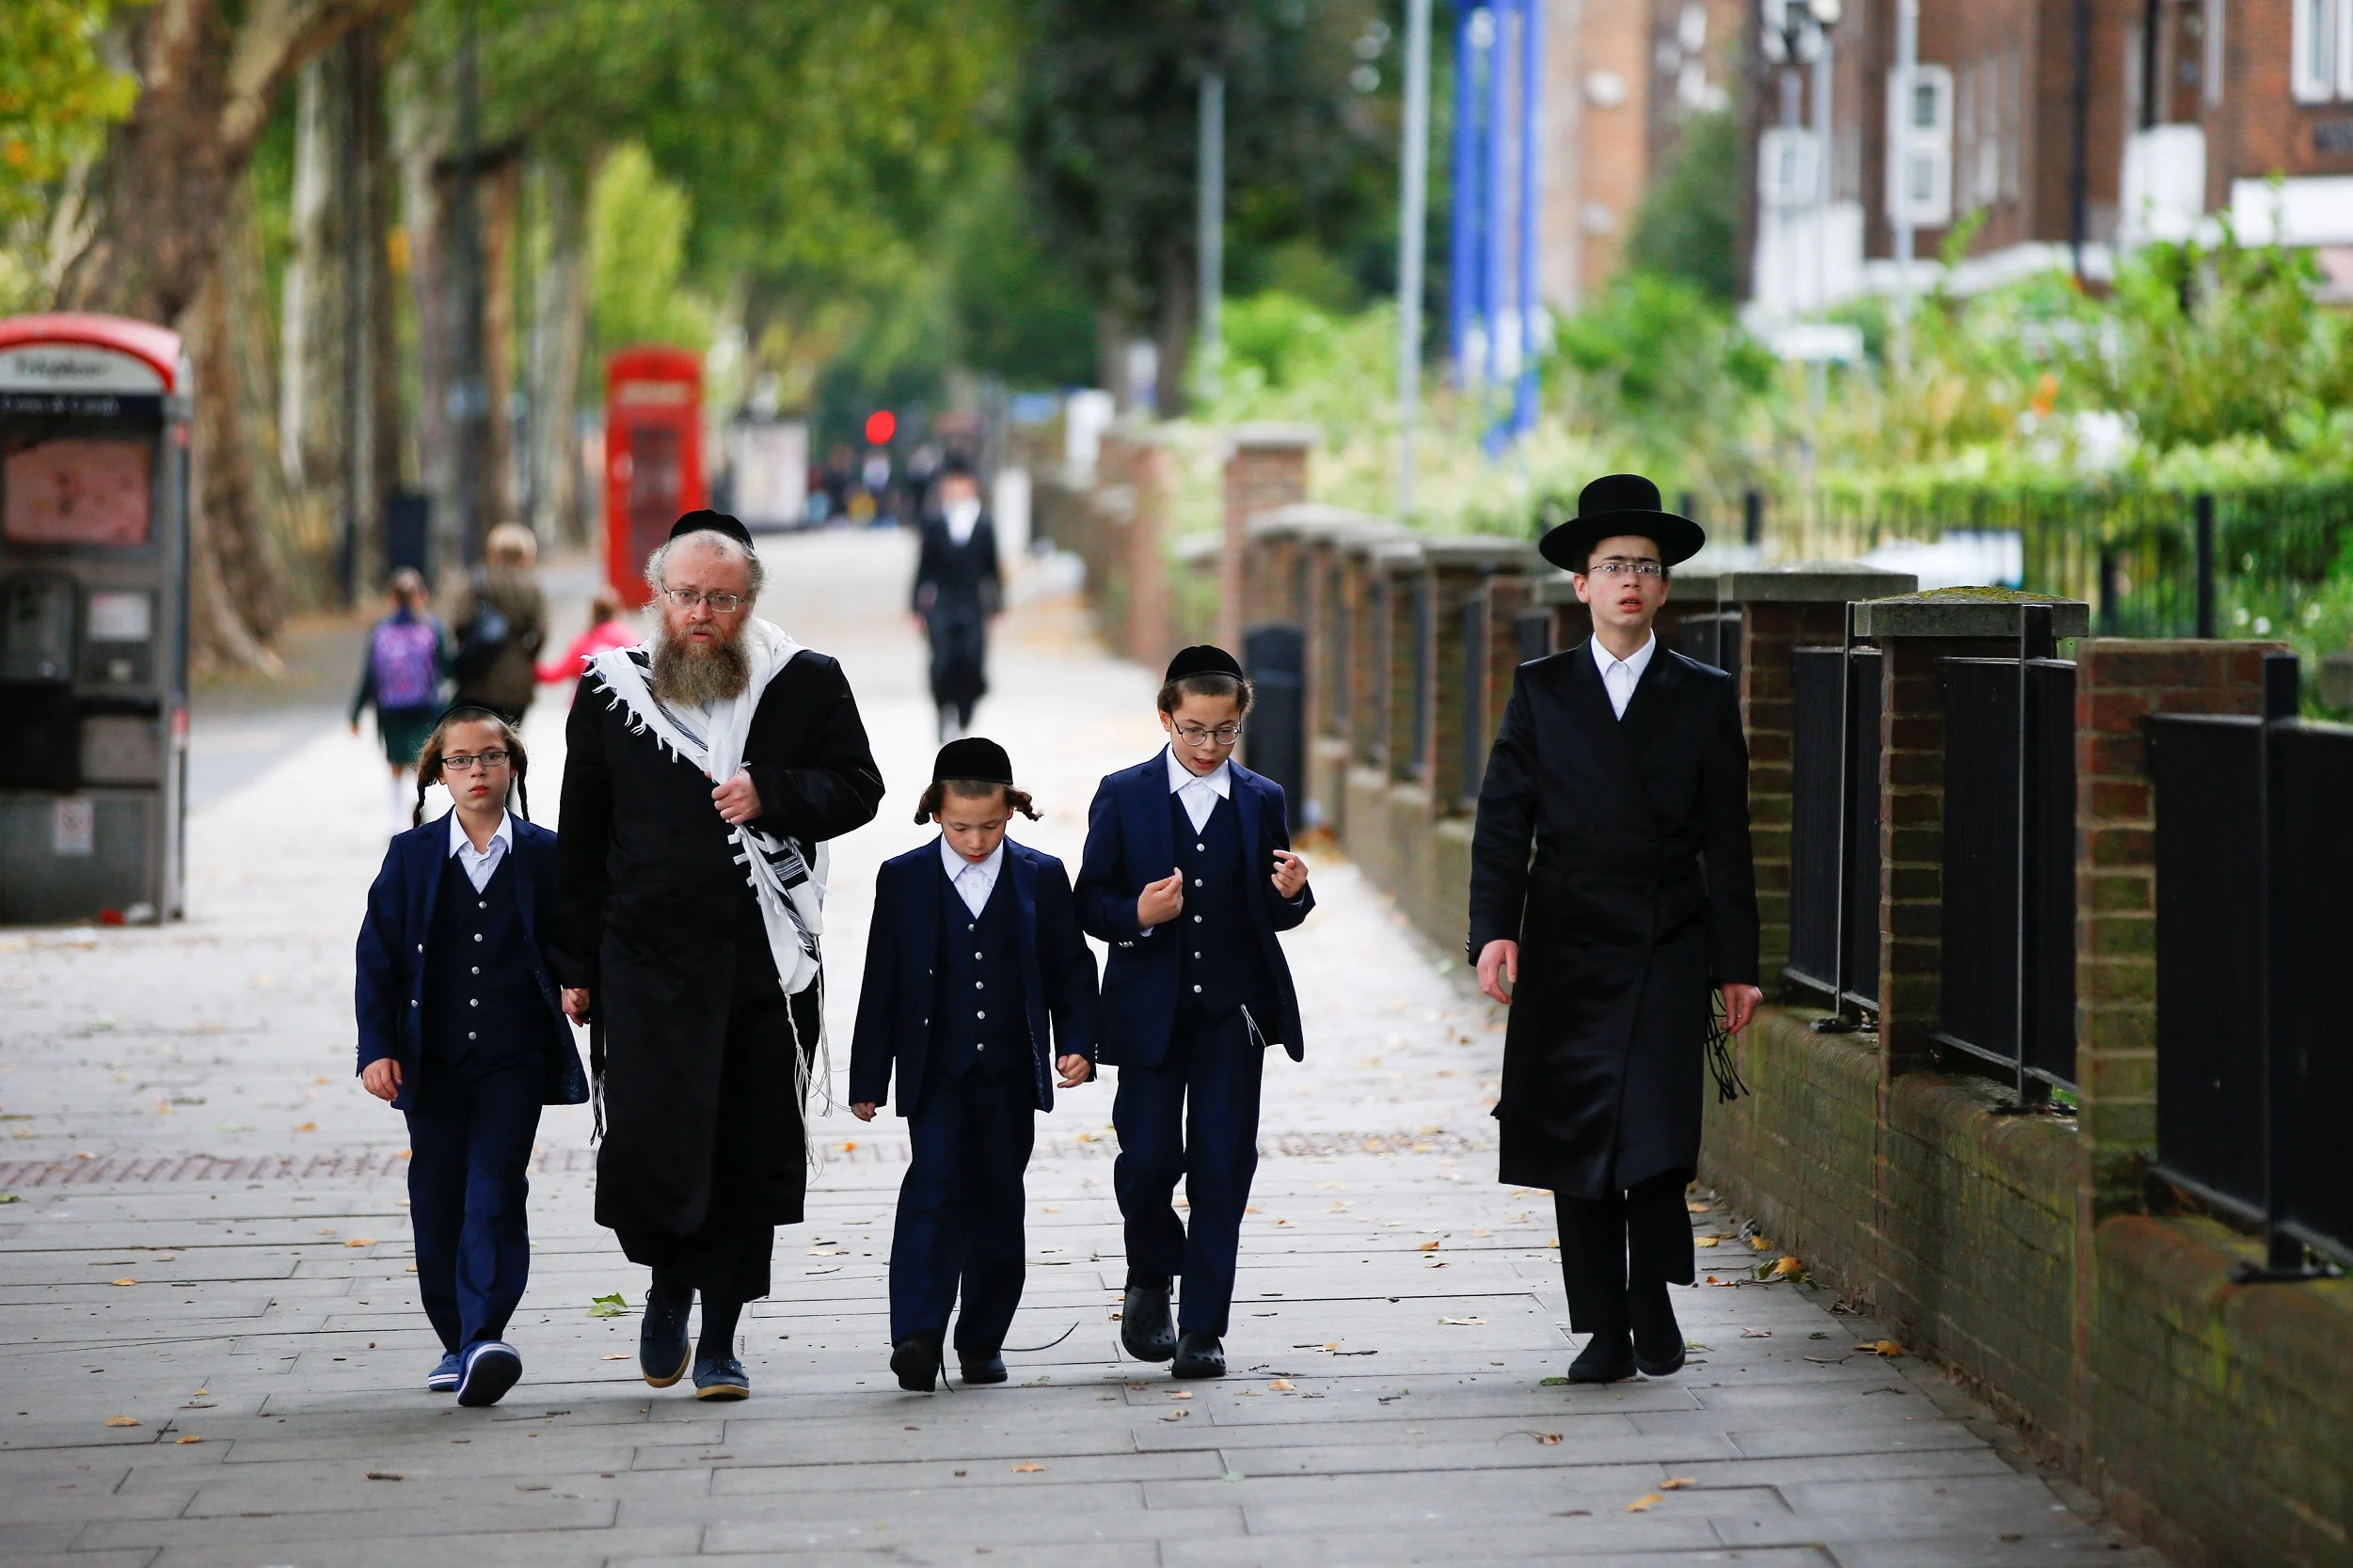 יהודים הולכים בשכונת סטמפורד היל שבלונדון - ארכיון